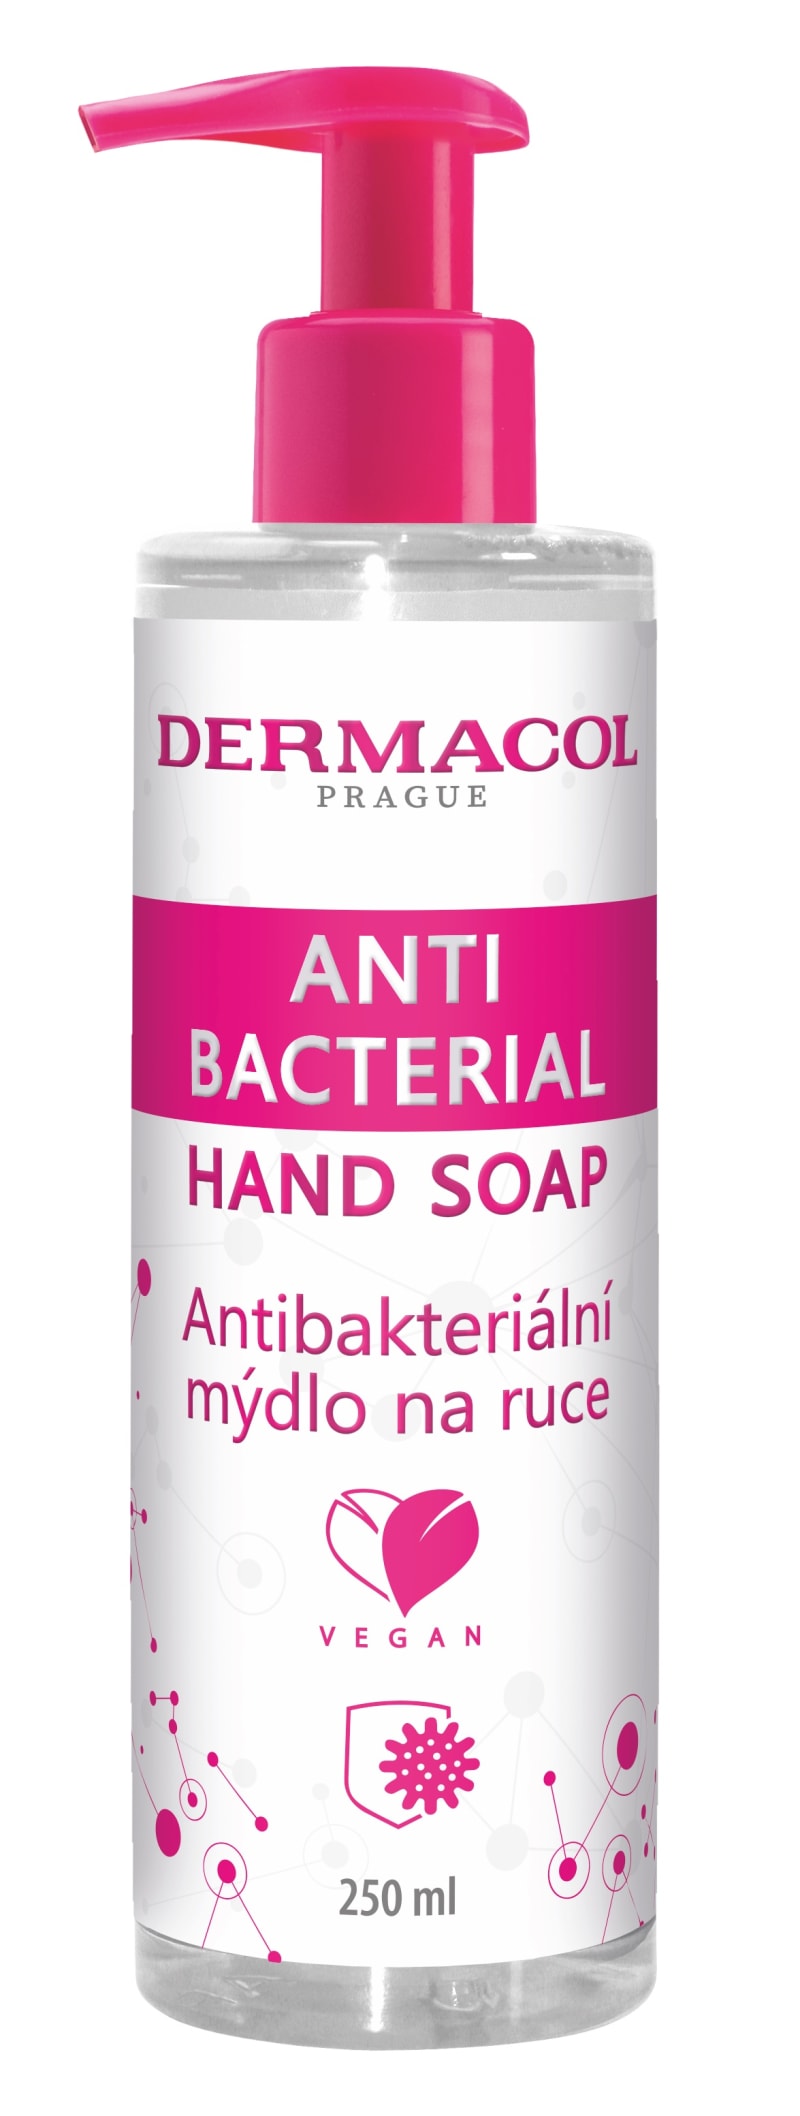 S taškou získáte i praktické antibakteriální mýdlo.